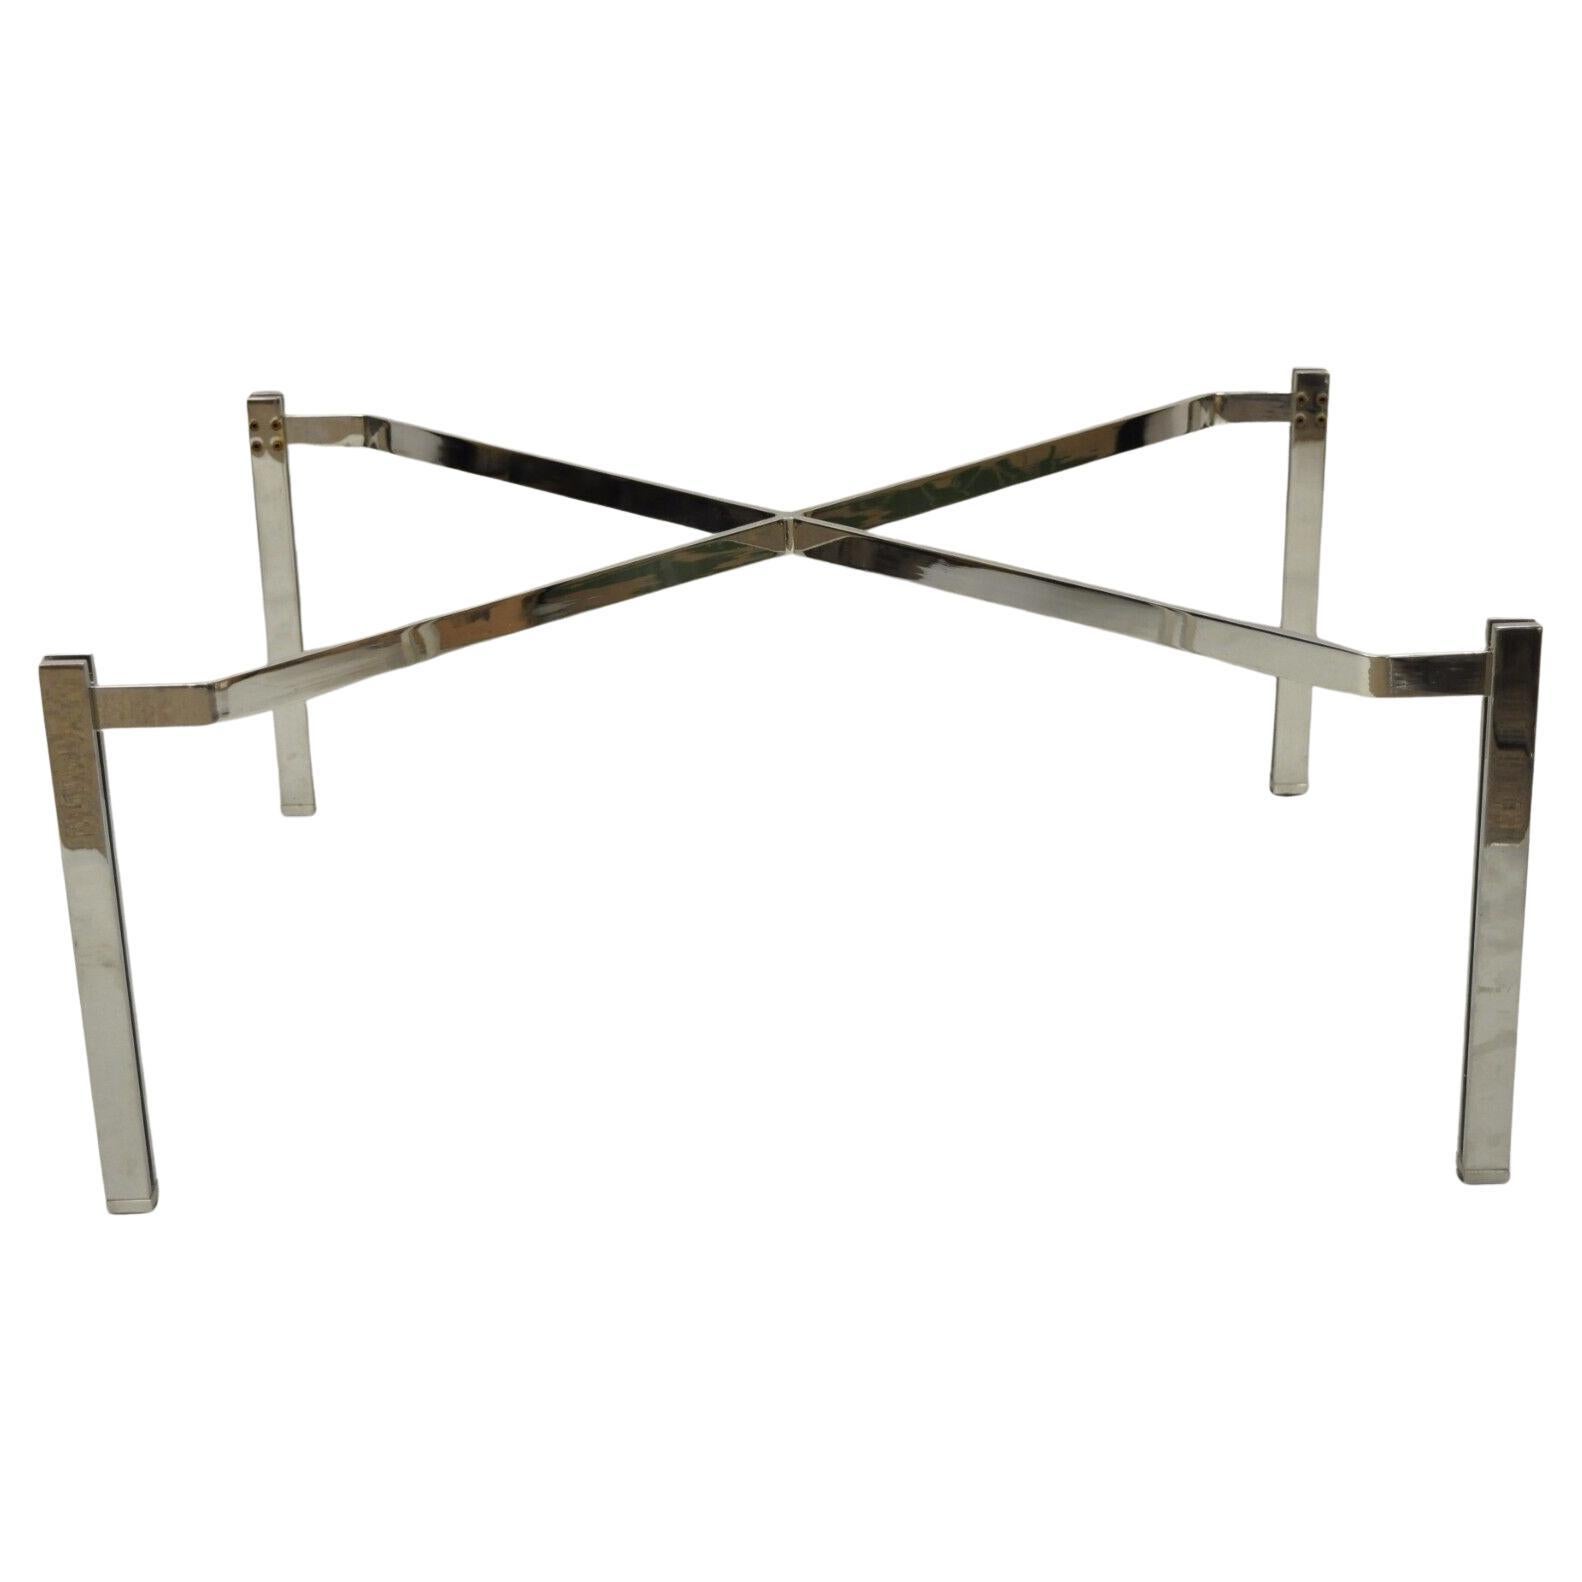 Base de table basse de style Baughman en métal chromé avec cadre en forme de X, mi-siècle moderne